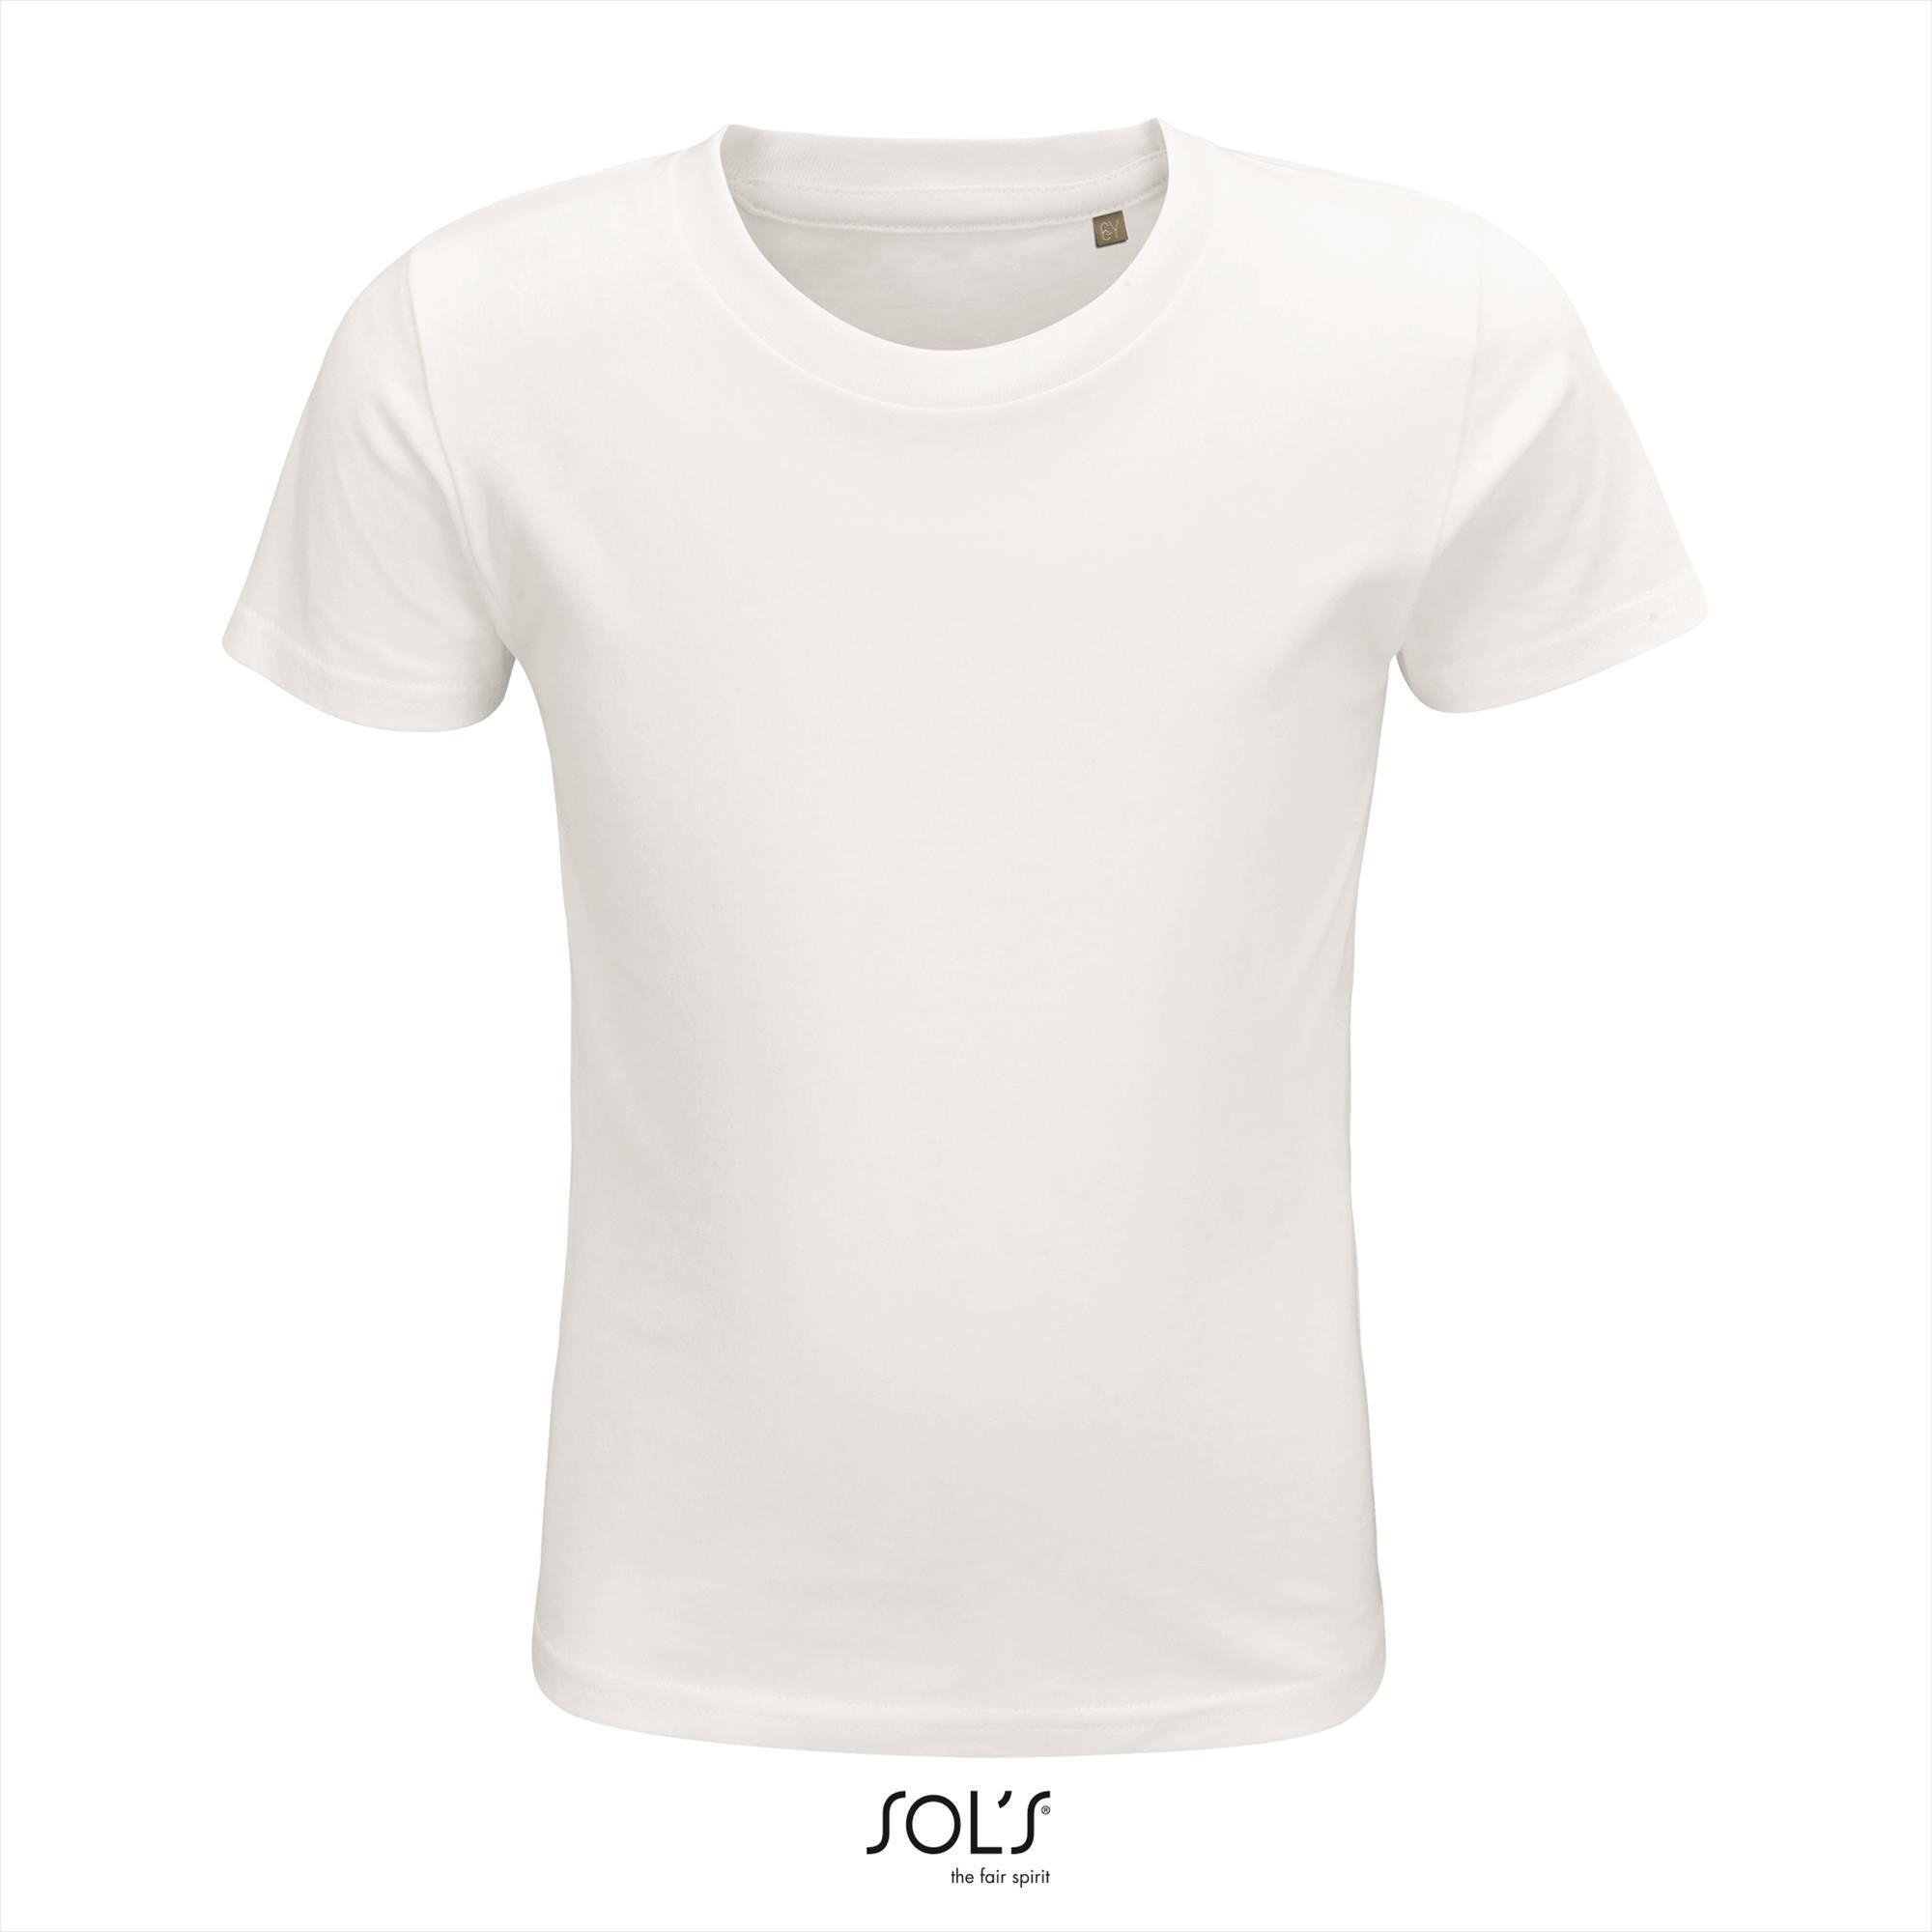 T-shirt wit voor kids Ronde hals biologisch kindershirt